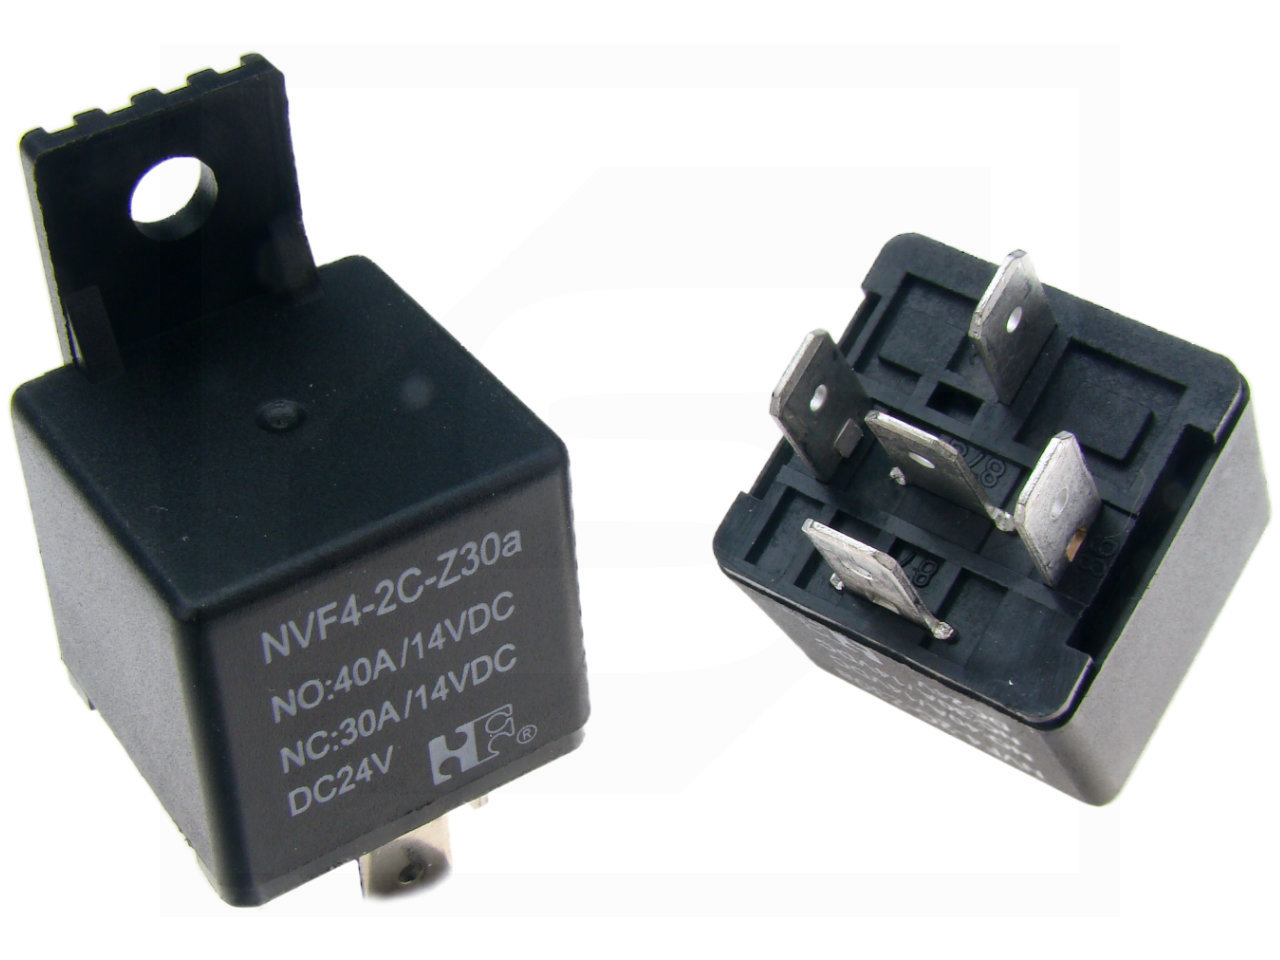 Przekaźnik NVF4-2C 24VDC 30/40A NHG 1 st. przełączny z uchem RoHS